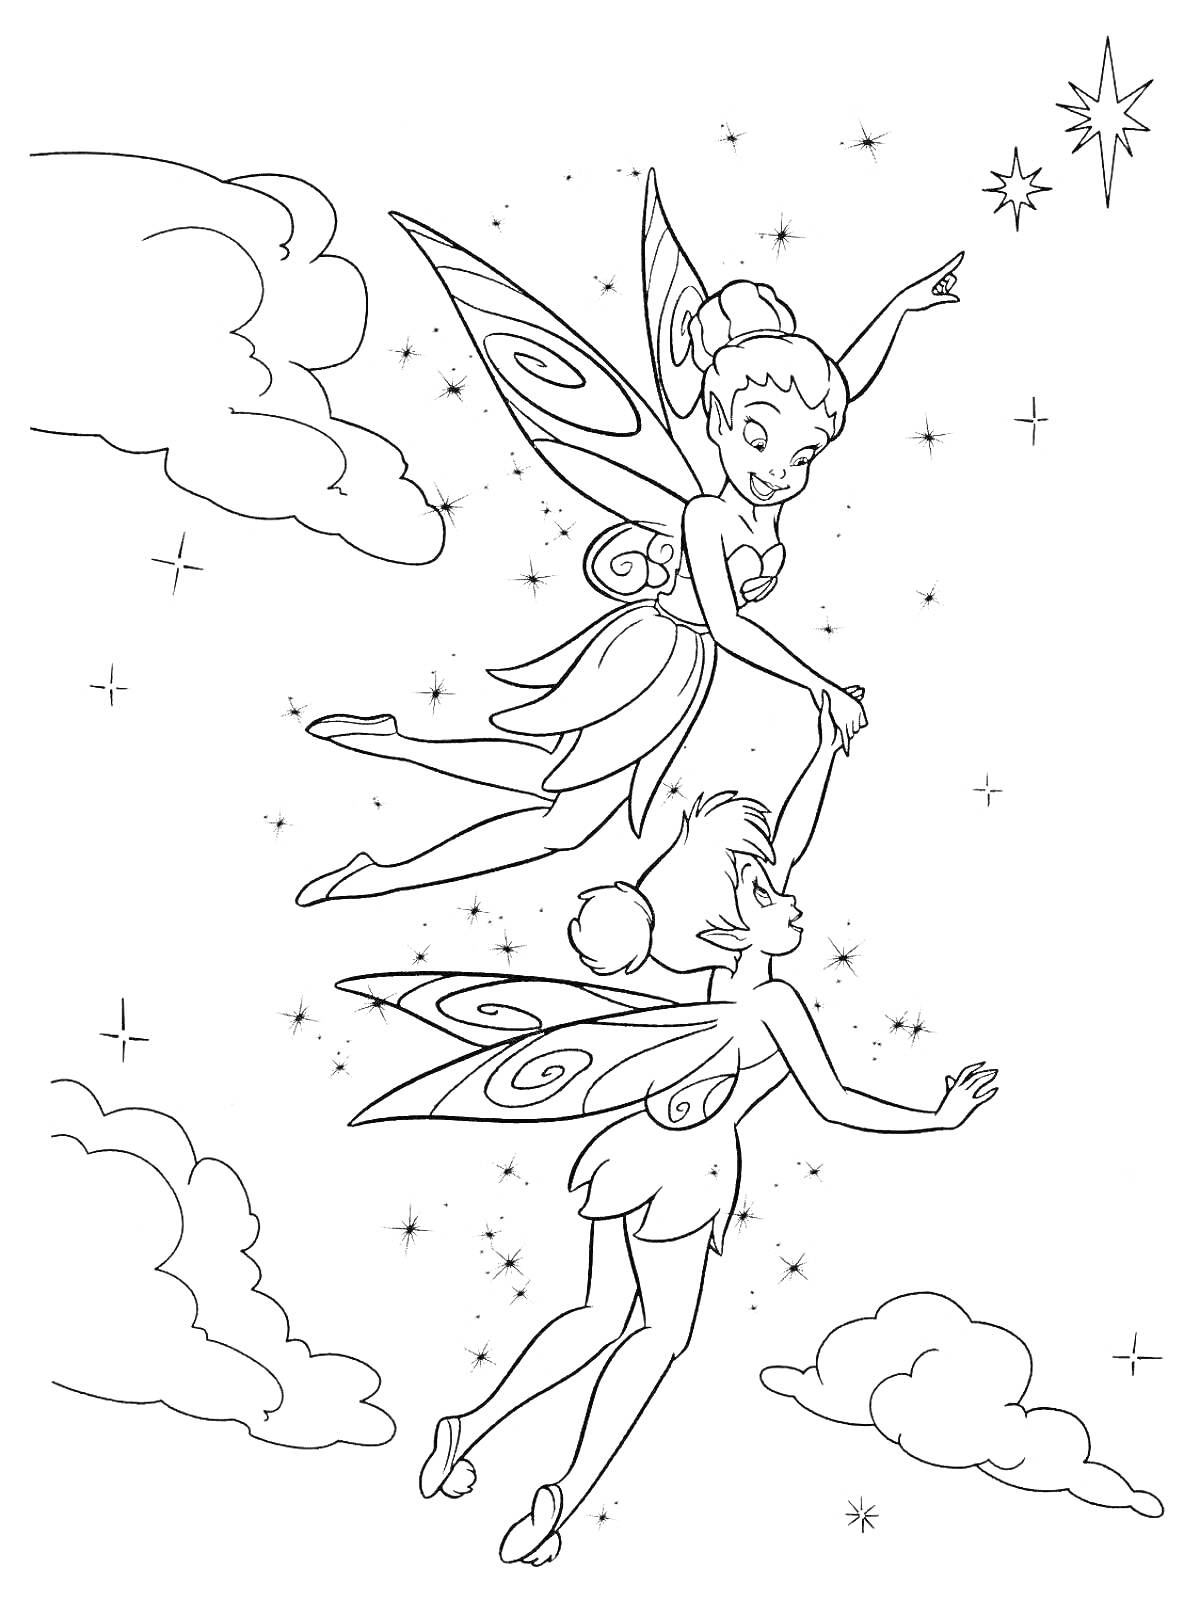 Раскраска две летающие феи Динь-Динь среди облаков и звёзд, одна фея указывает на звезду